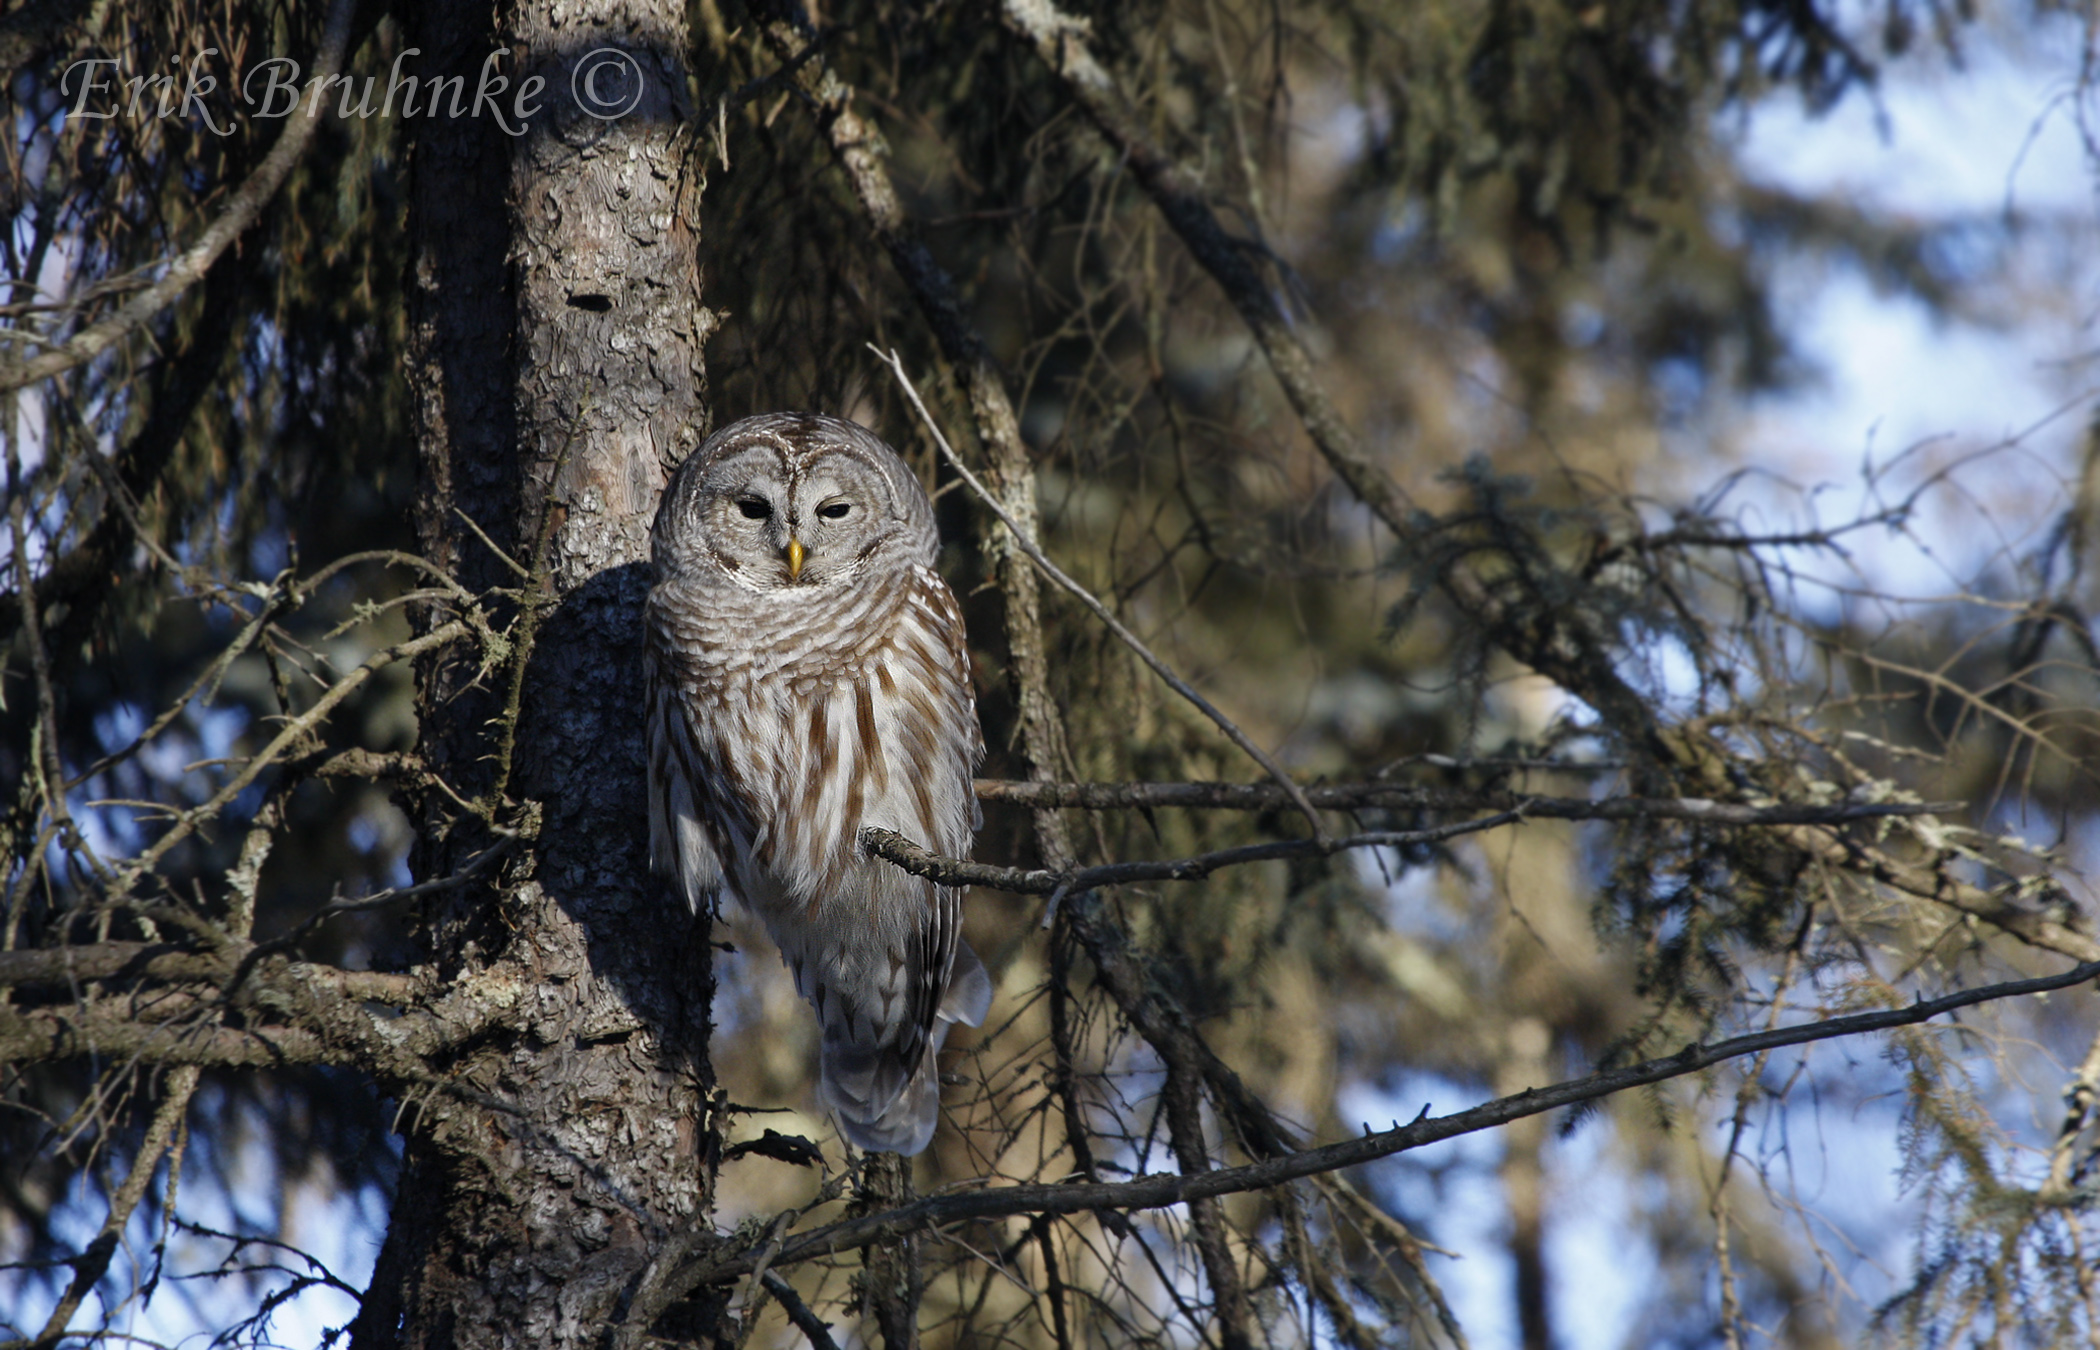 Barred Owl.  Photo by Erik Bruhnke.